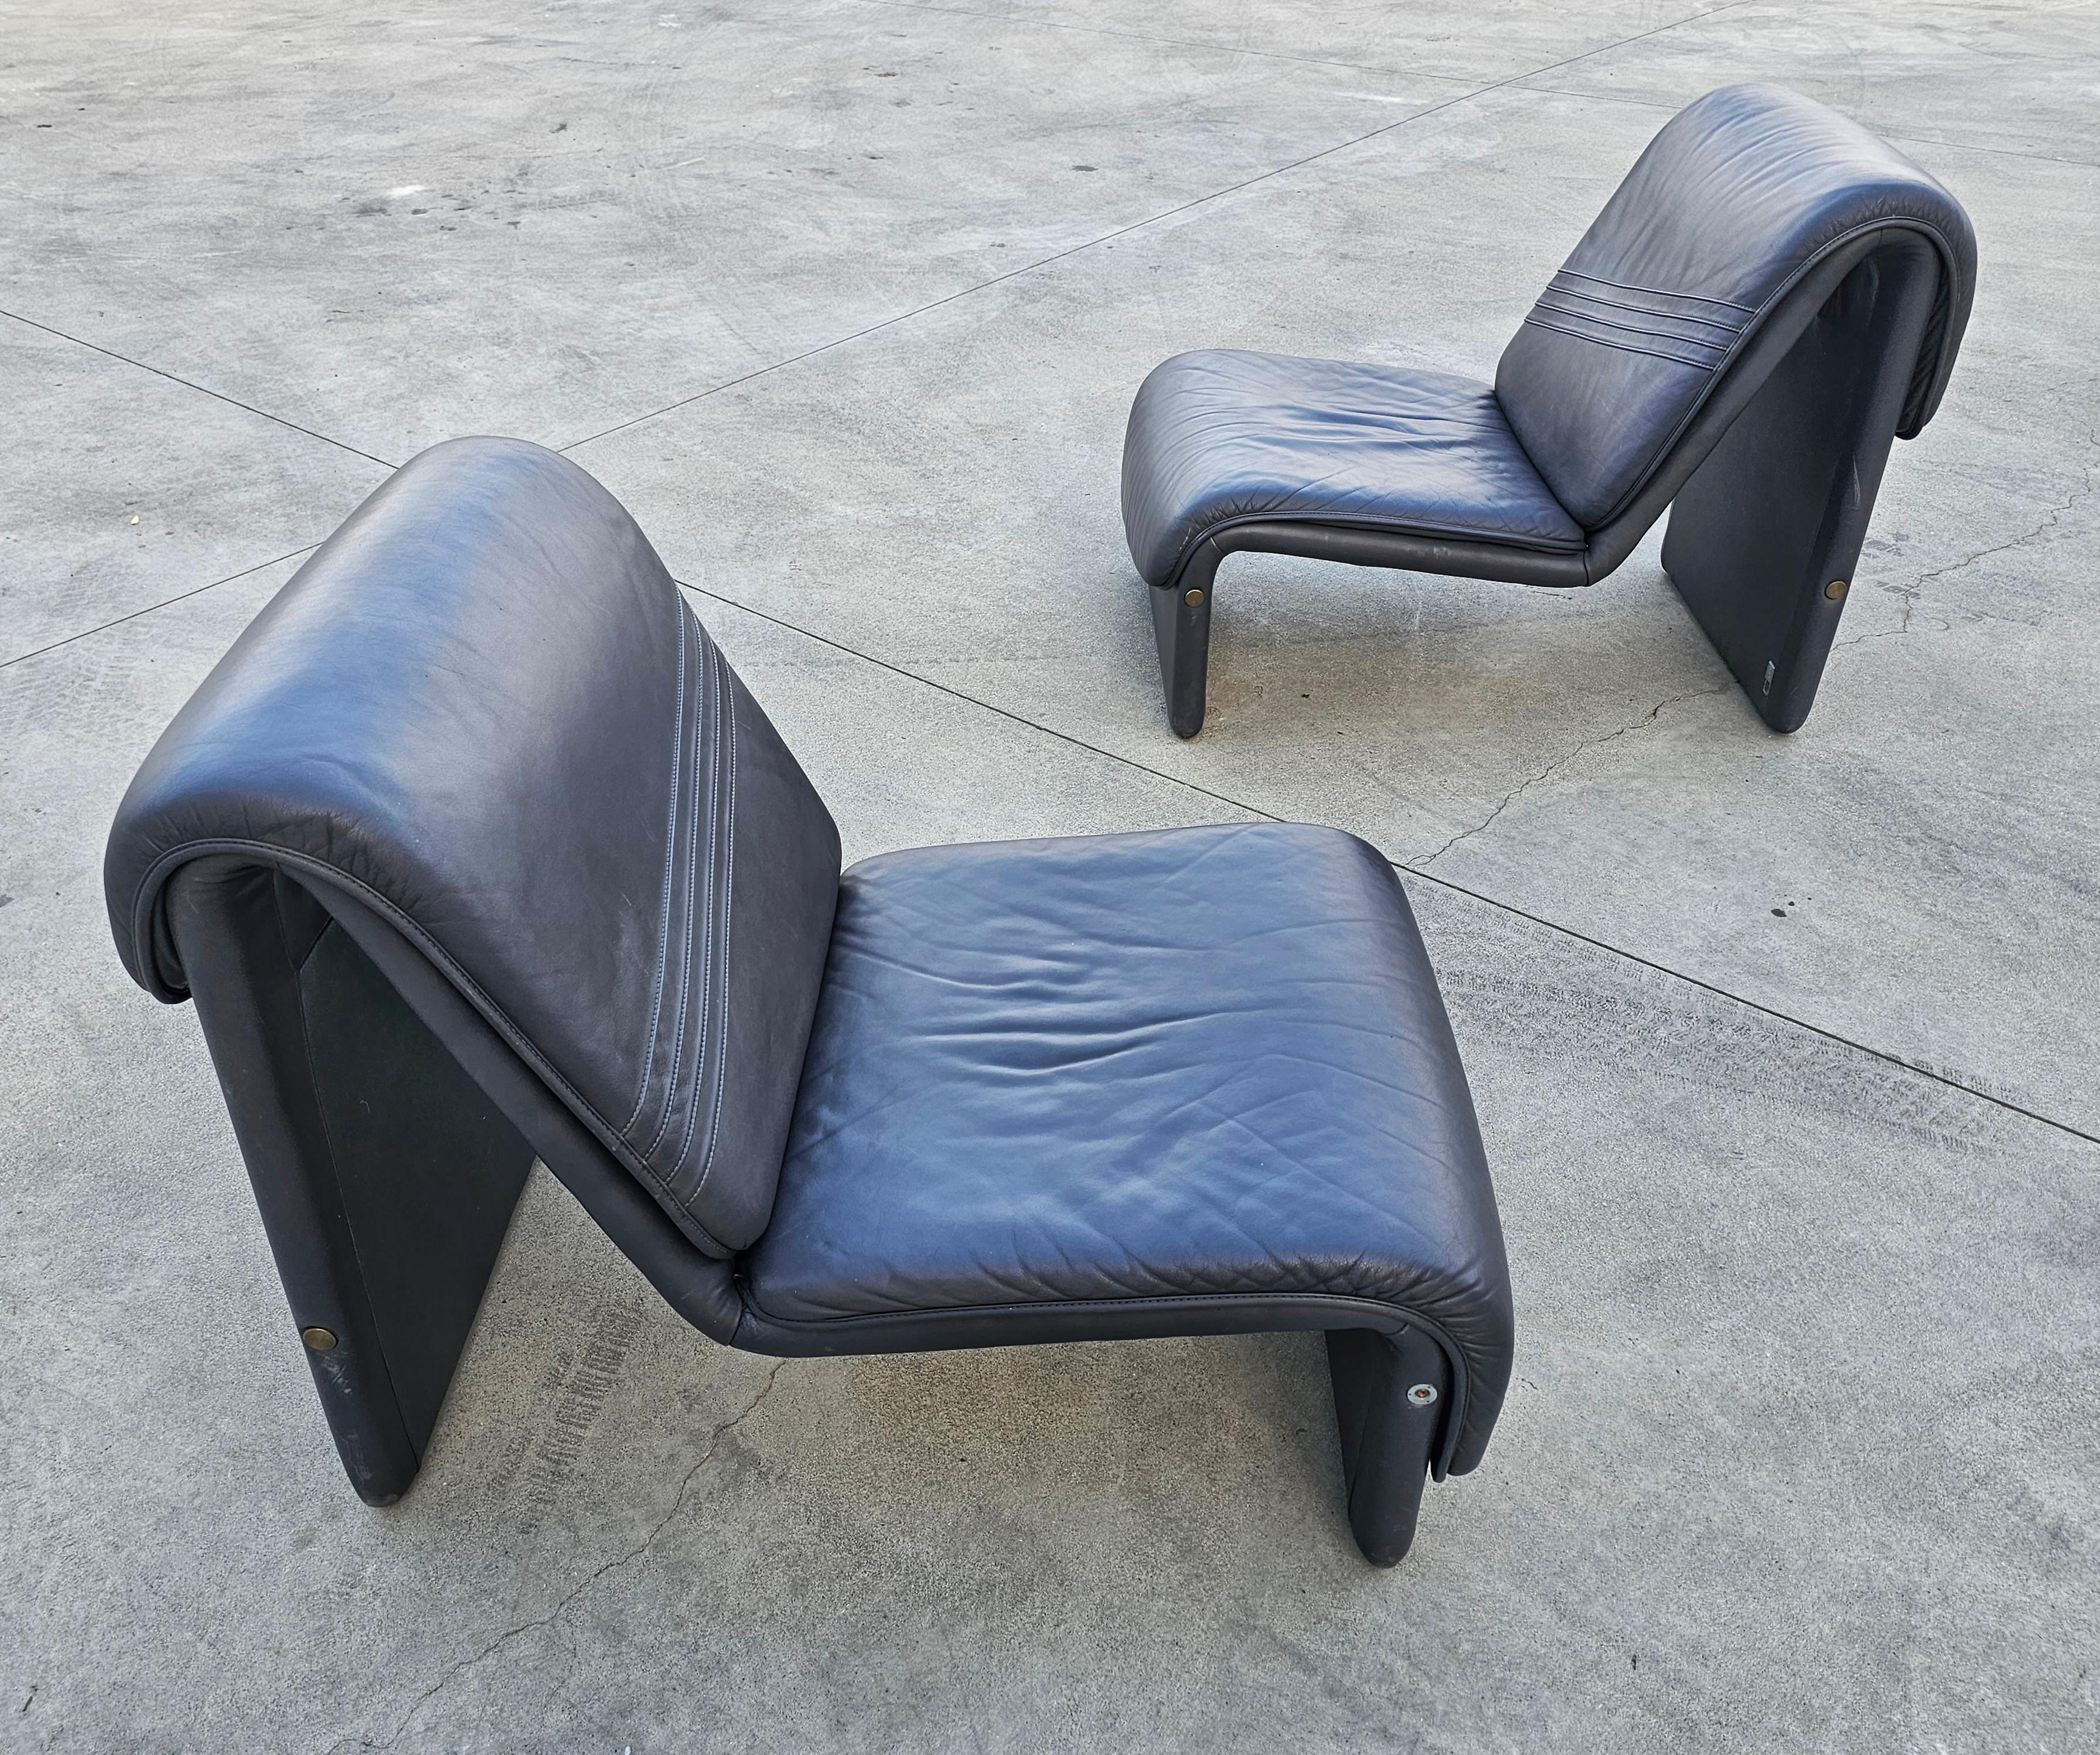 Dans cette annonce, vous trouverez une paire de chaises de salon postmodernes fabriquées dans le style d'Etienne Profiles, avec un profil minimal et une esthétique courbée attrayante. Ces chaises ont été fabriquées par Swiss Seats, et les plaques du